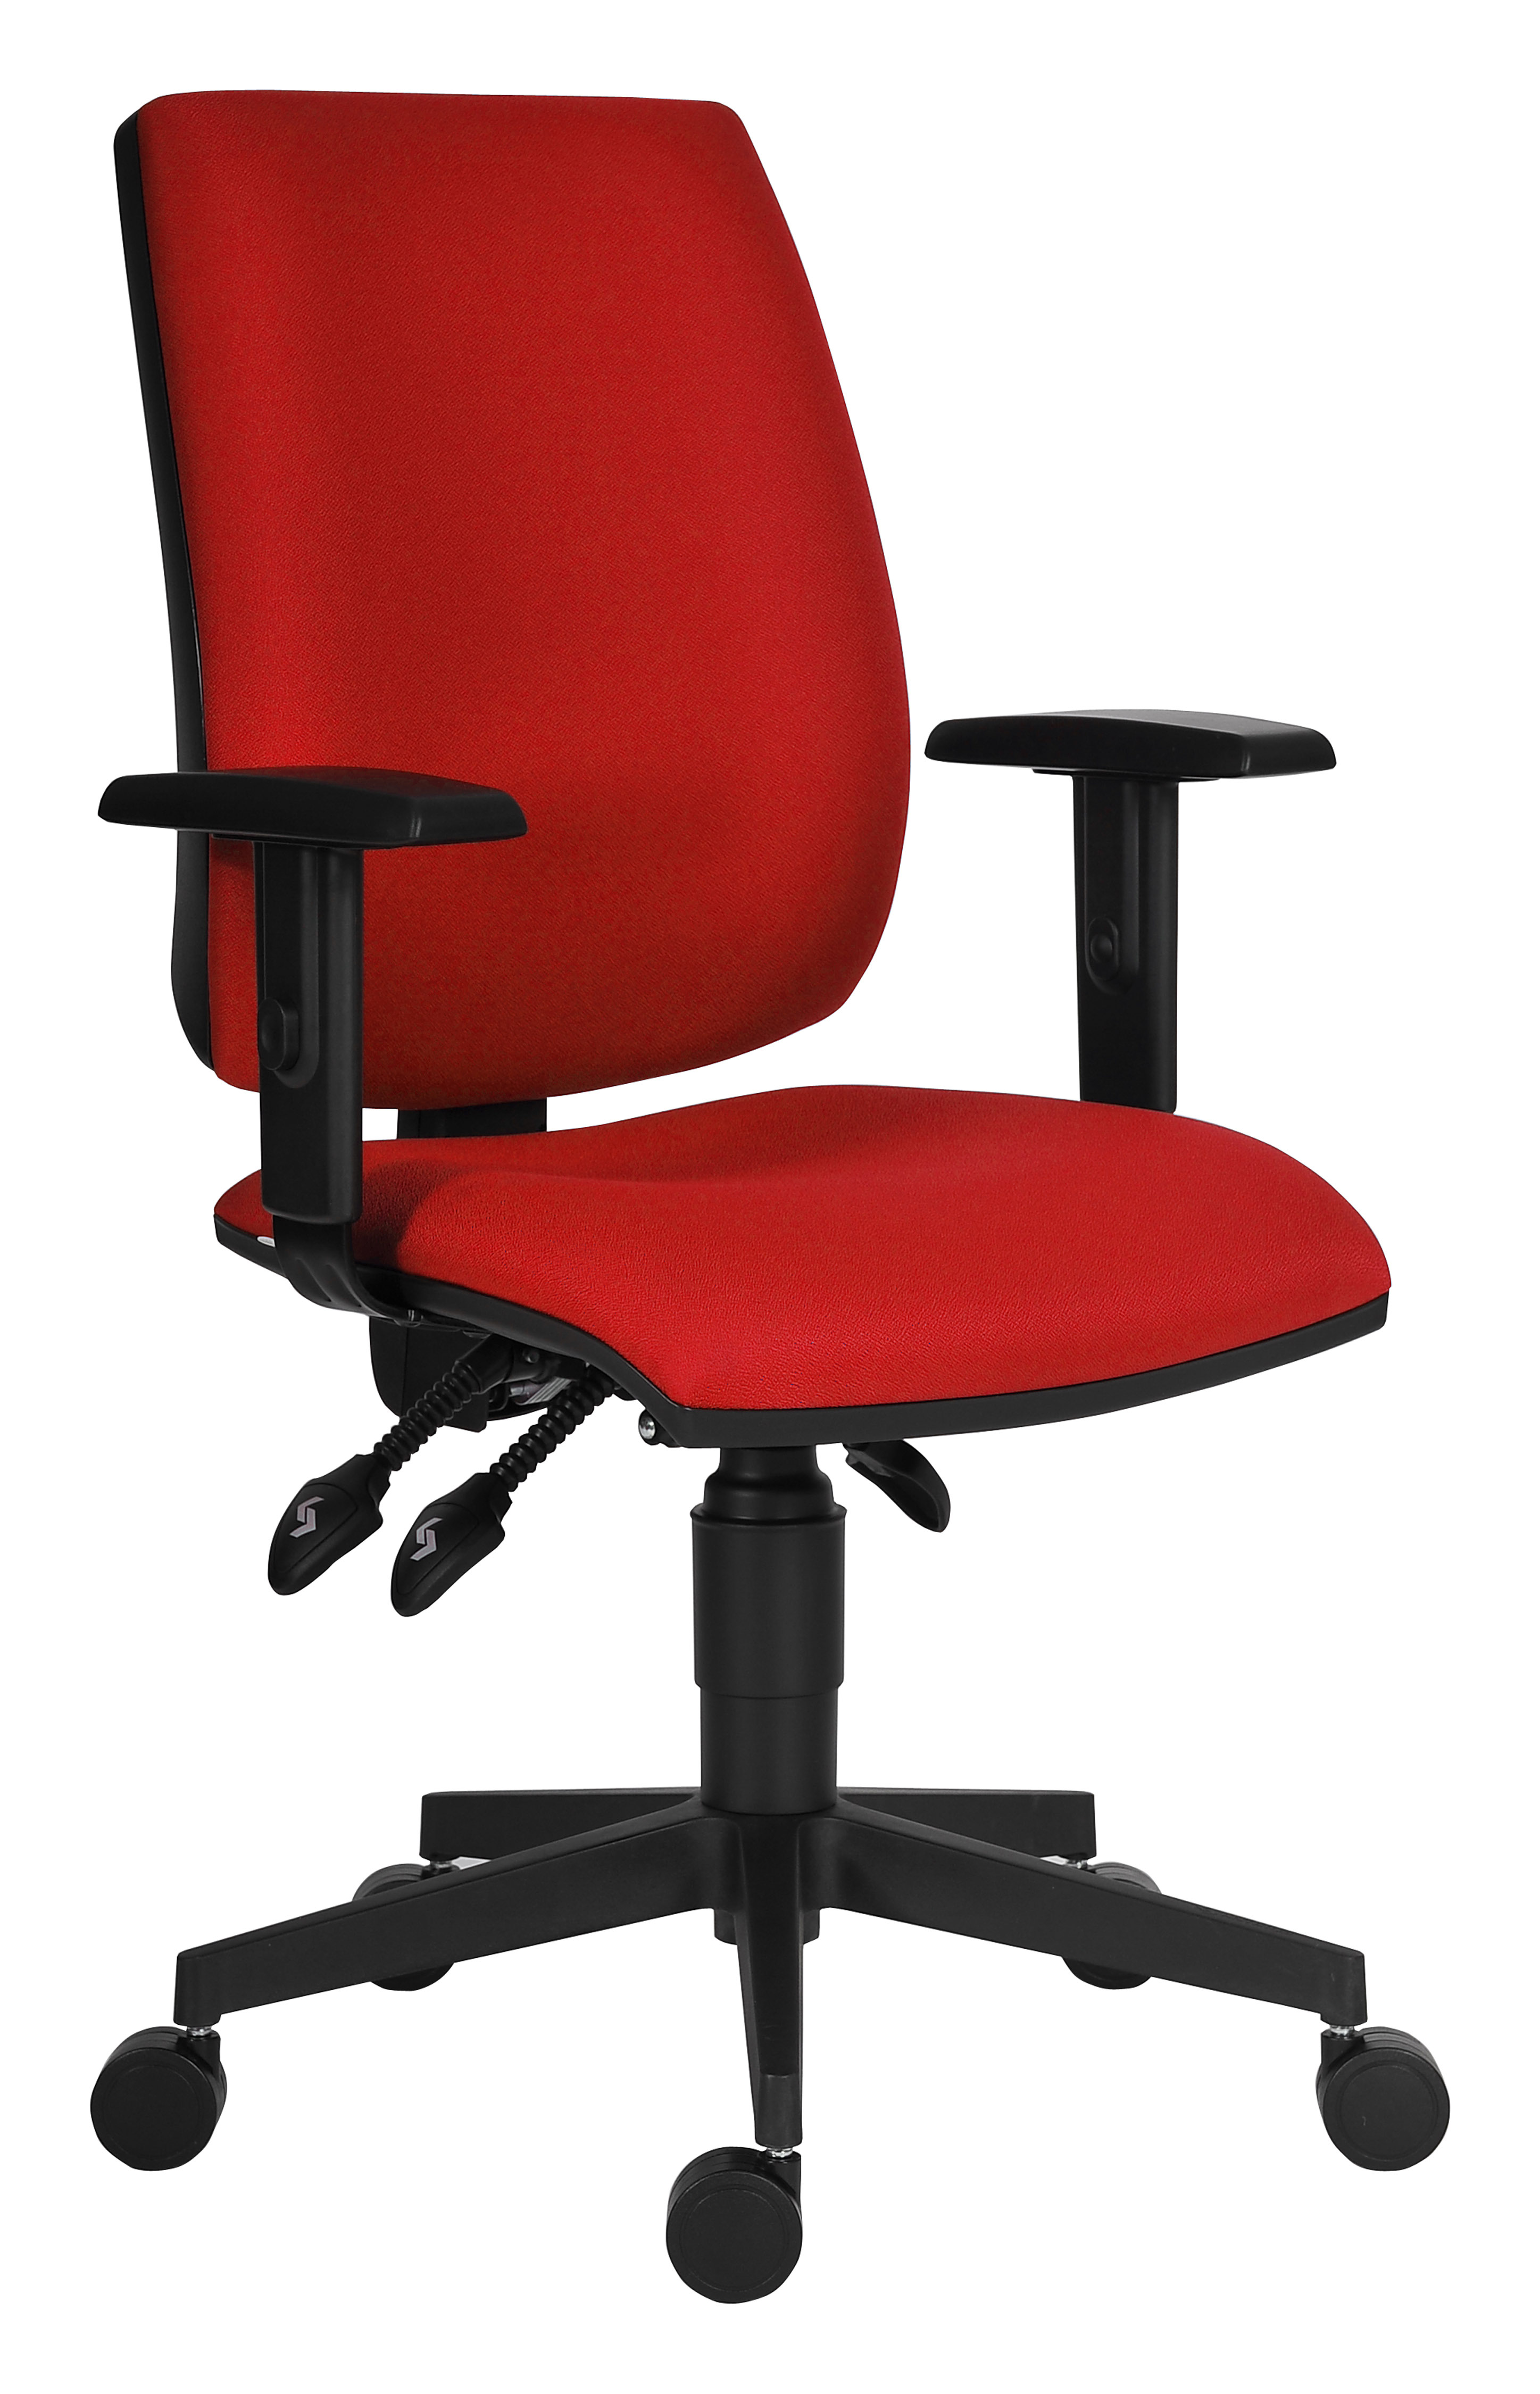 Стул рабочий офисный. Стул Альрик красный. Стул офисный красный. Стул офисный красный эконом. Офисное кресло красное круглое.